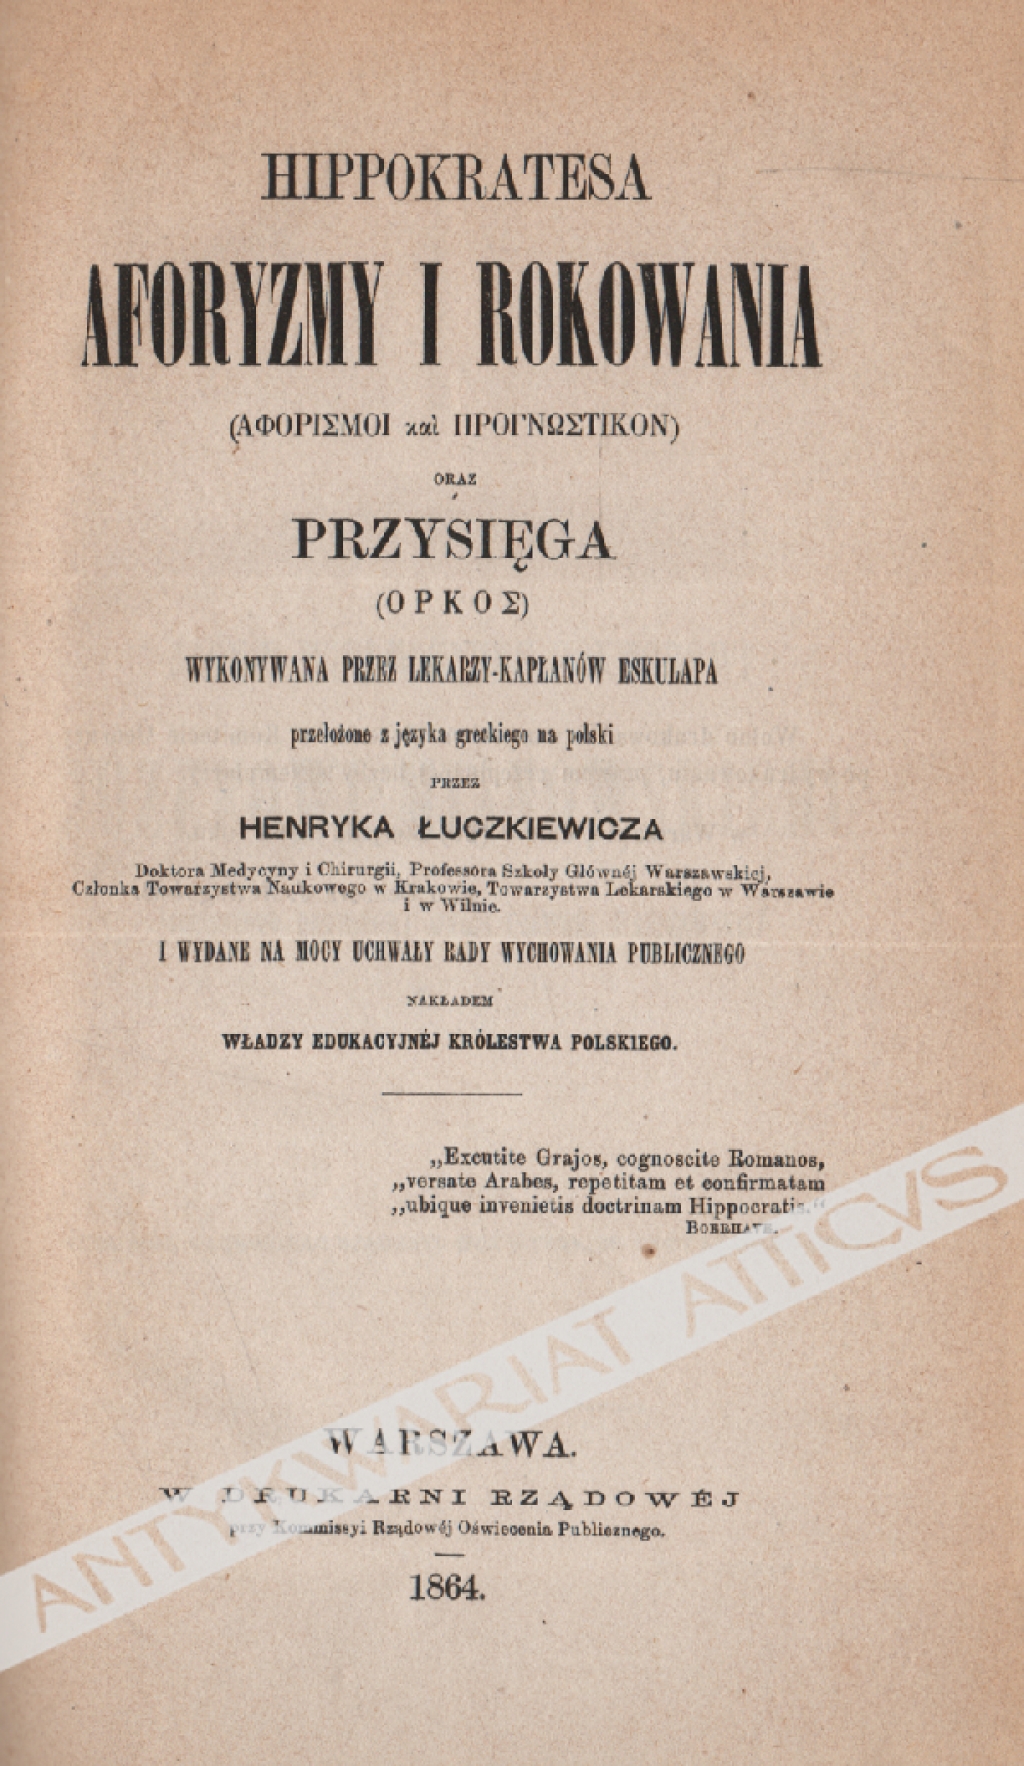 Hippokratesa aforyzmy i rokowania oraz Przysięga wykonywana przez lekarzy - kapłanów Eskulapa 